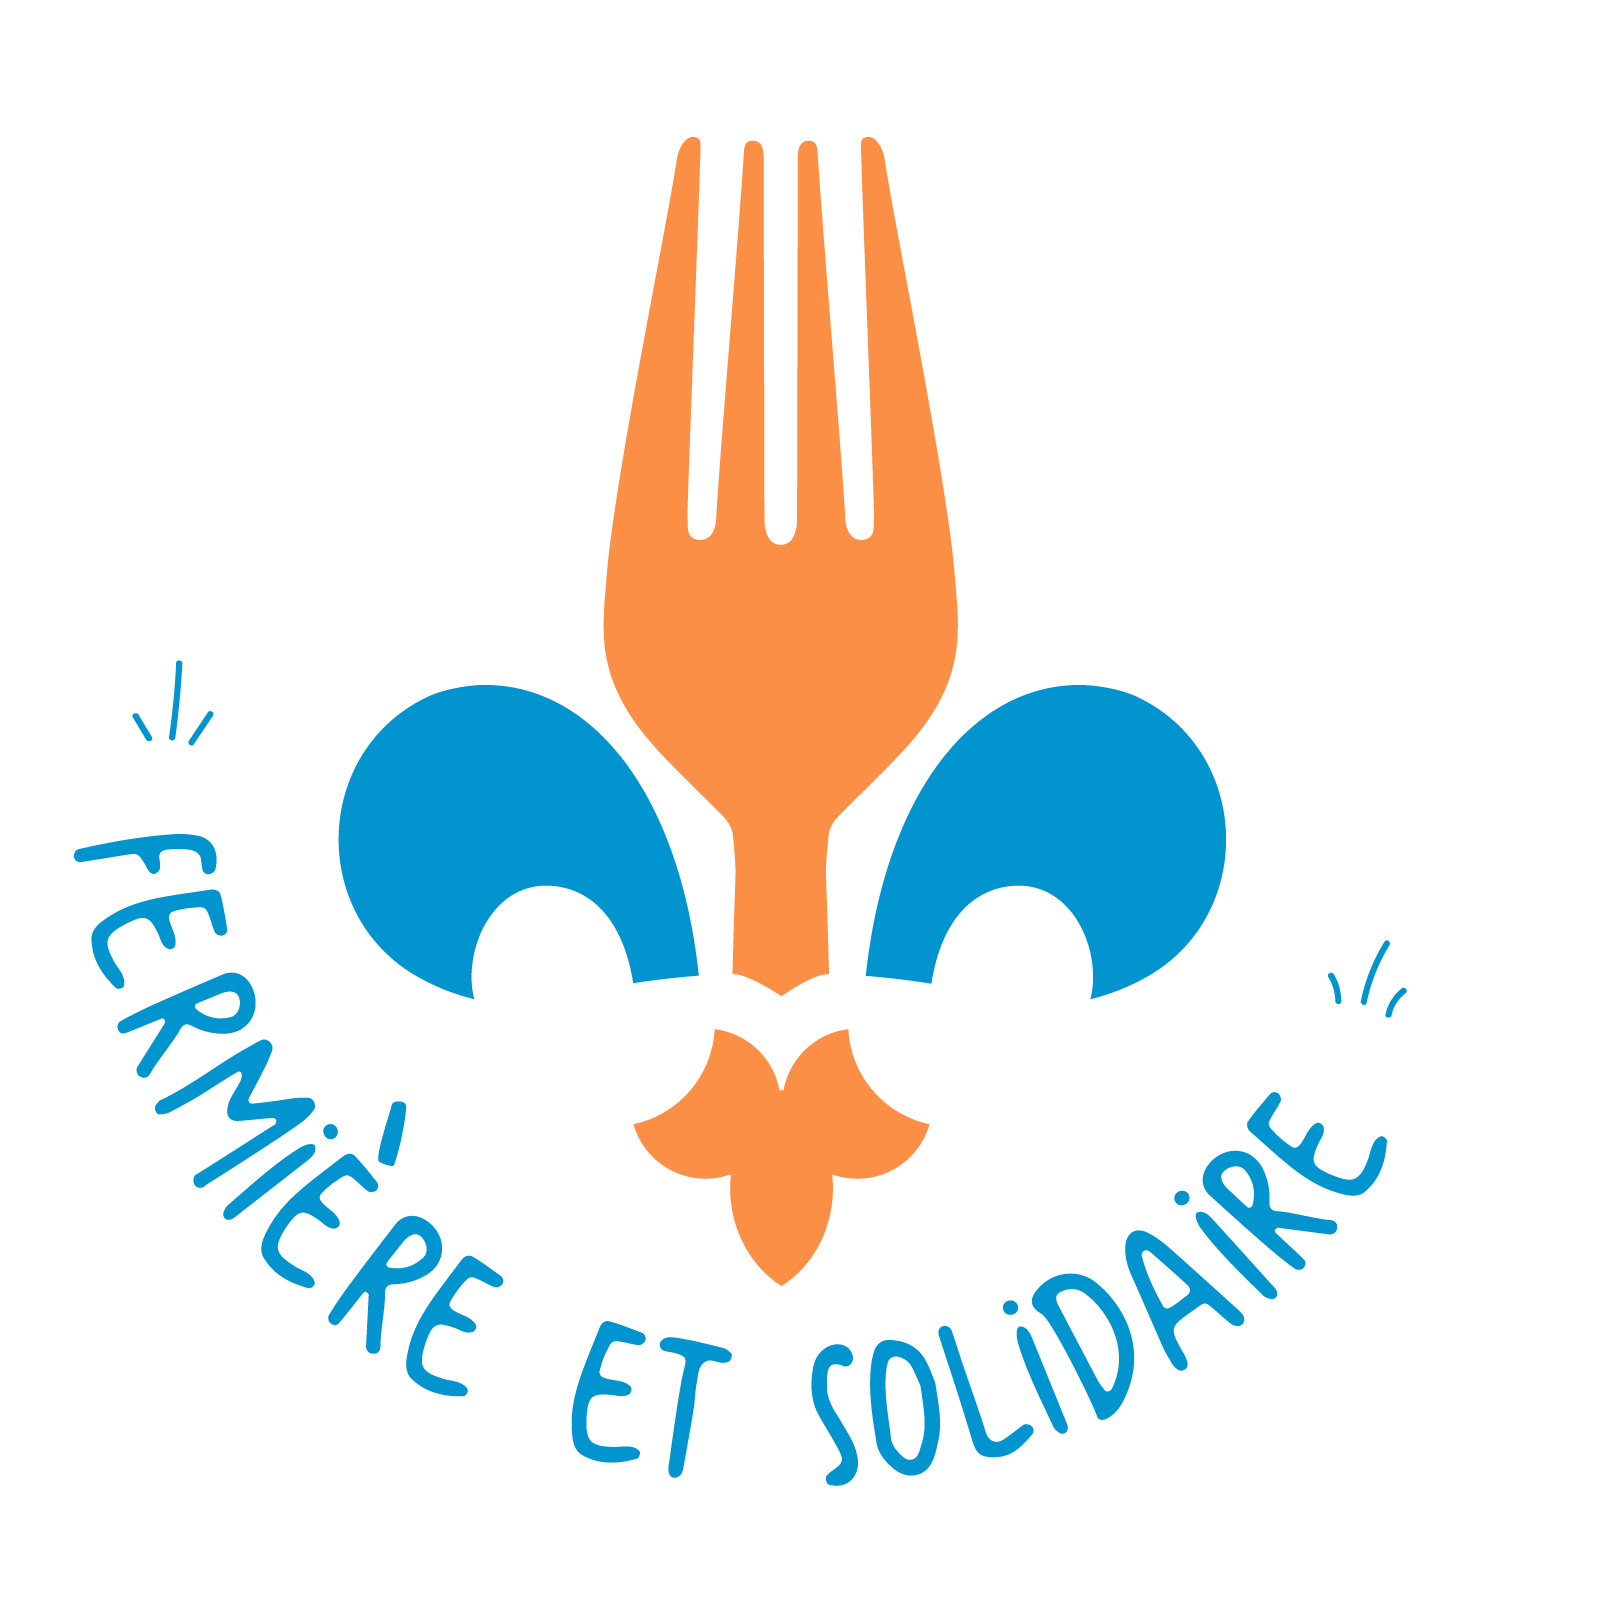 Carrefour solidaire Centre communautaire d'alimentation logo